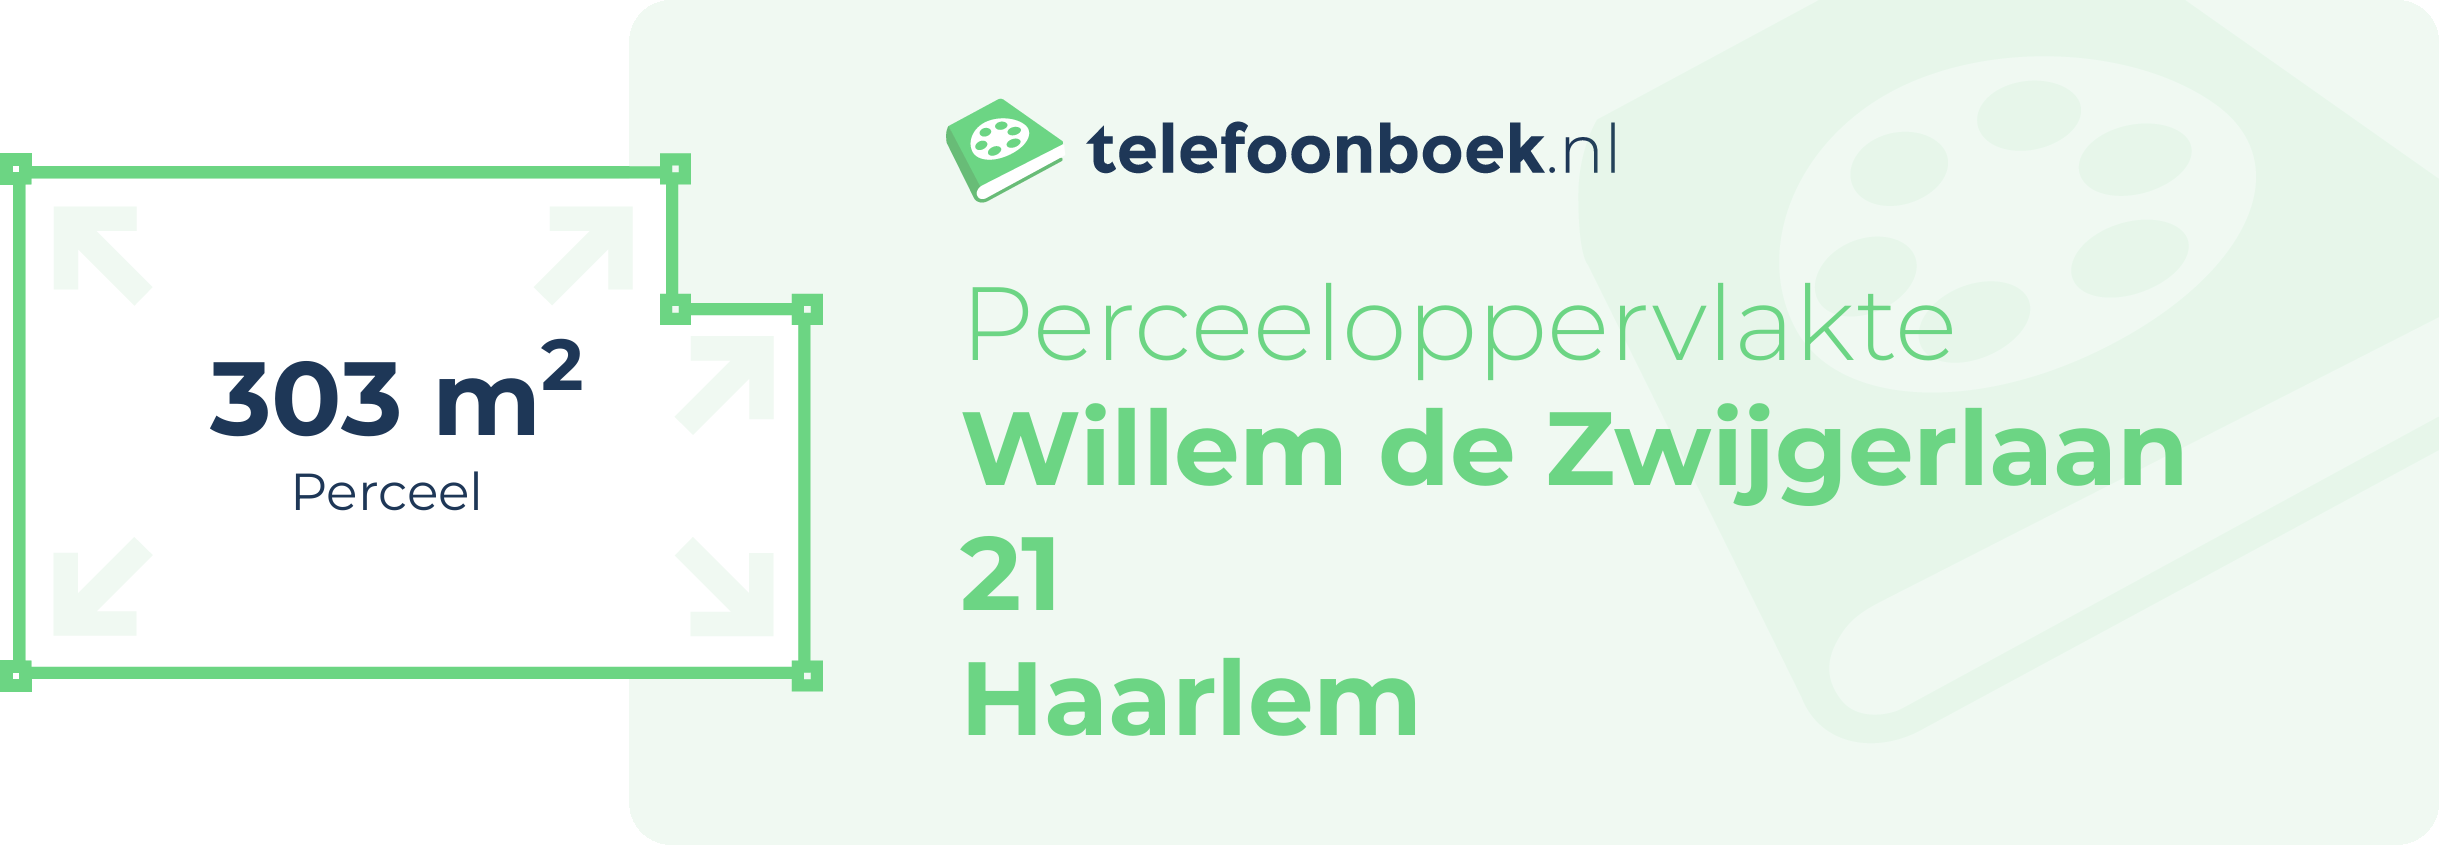 Perceeloppervlakte Willem De Zwijgerlaan 21 Haarlem